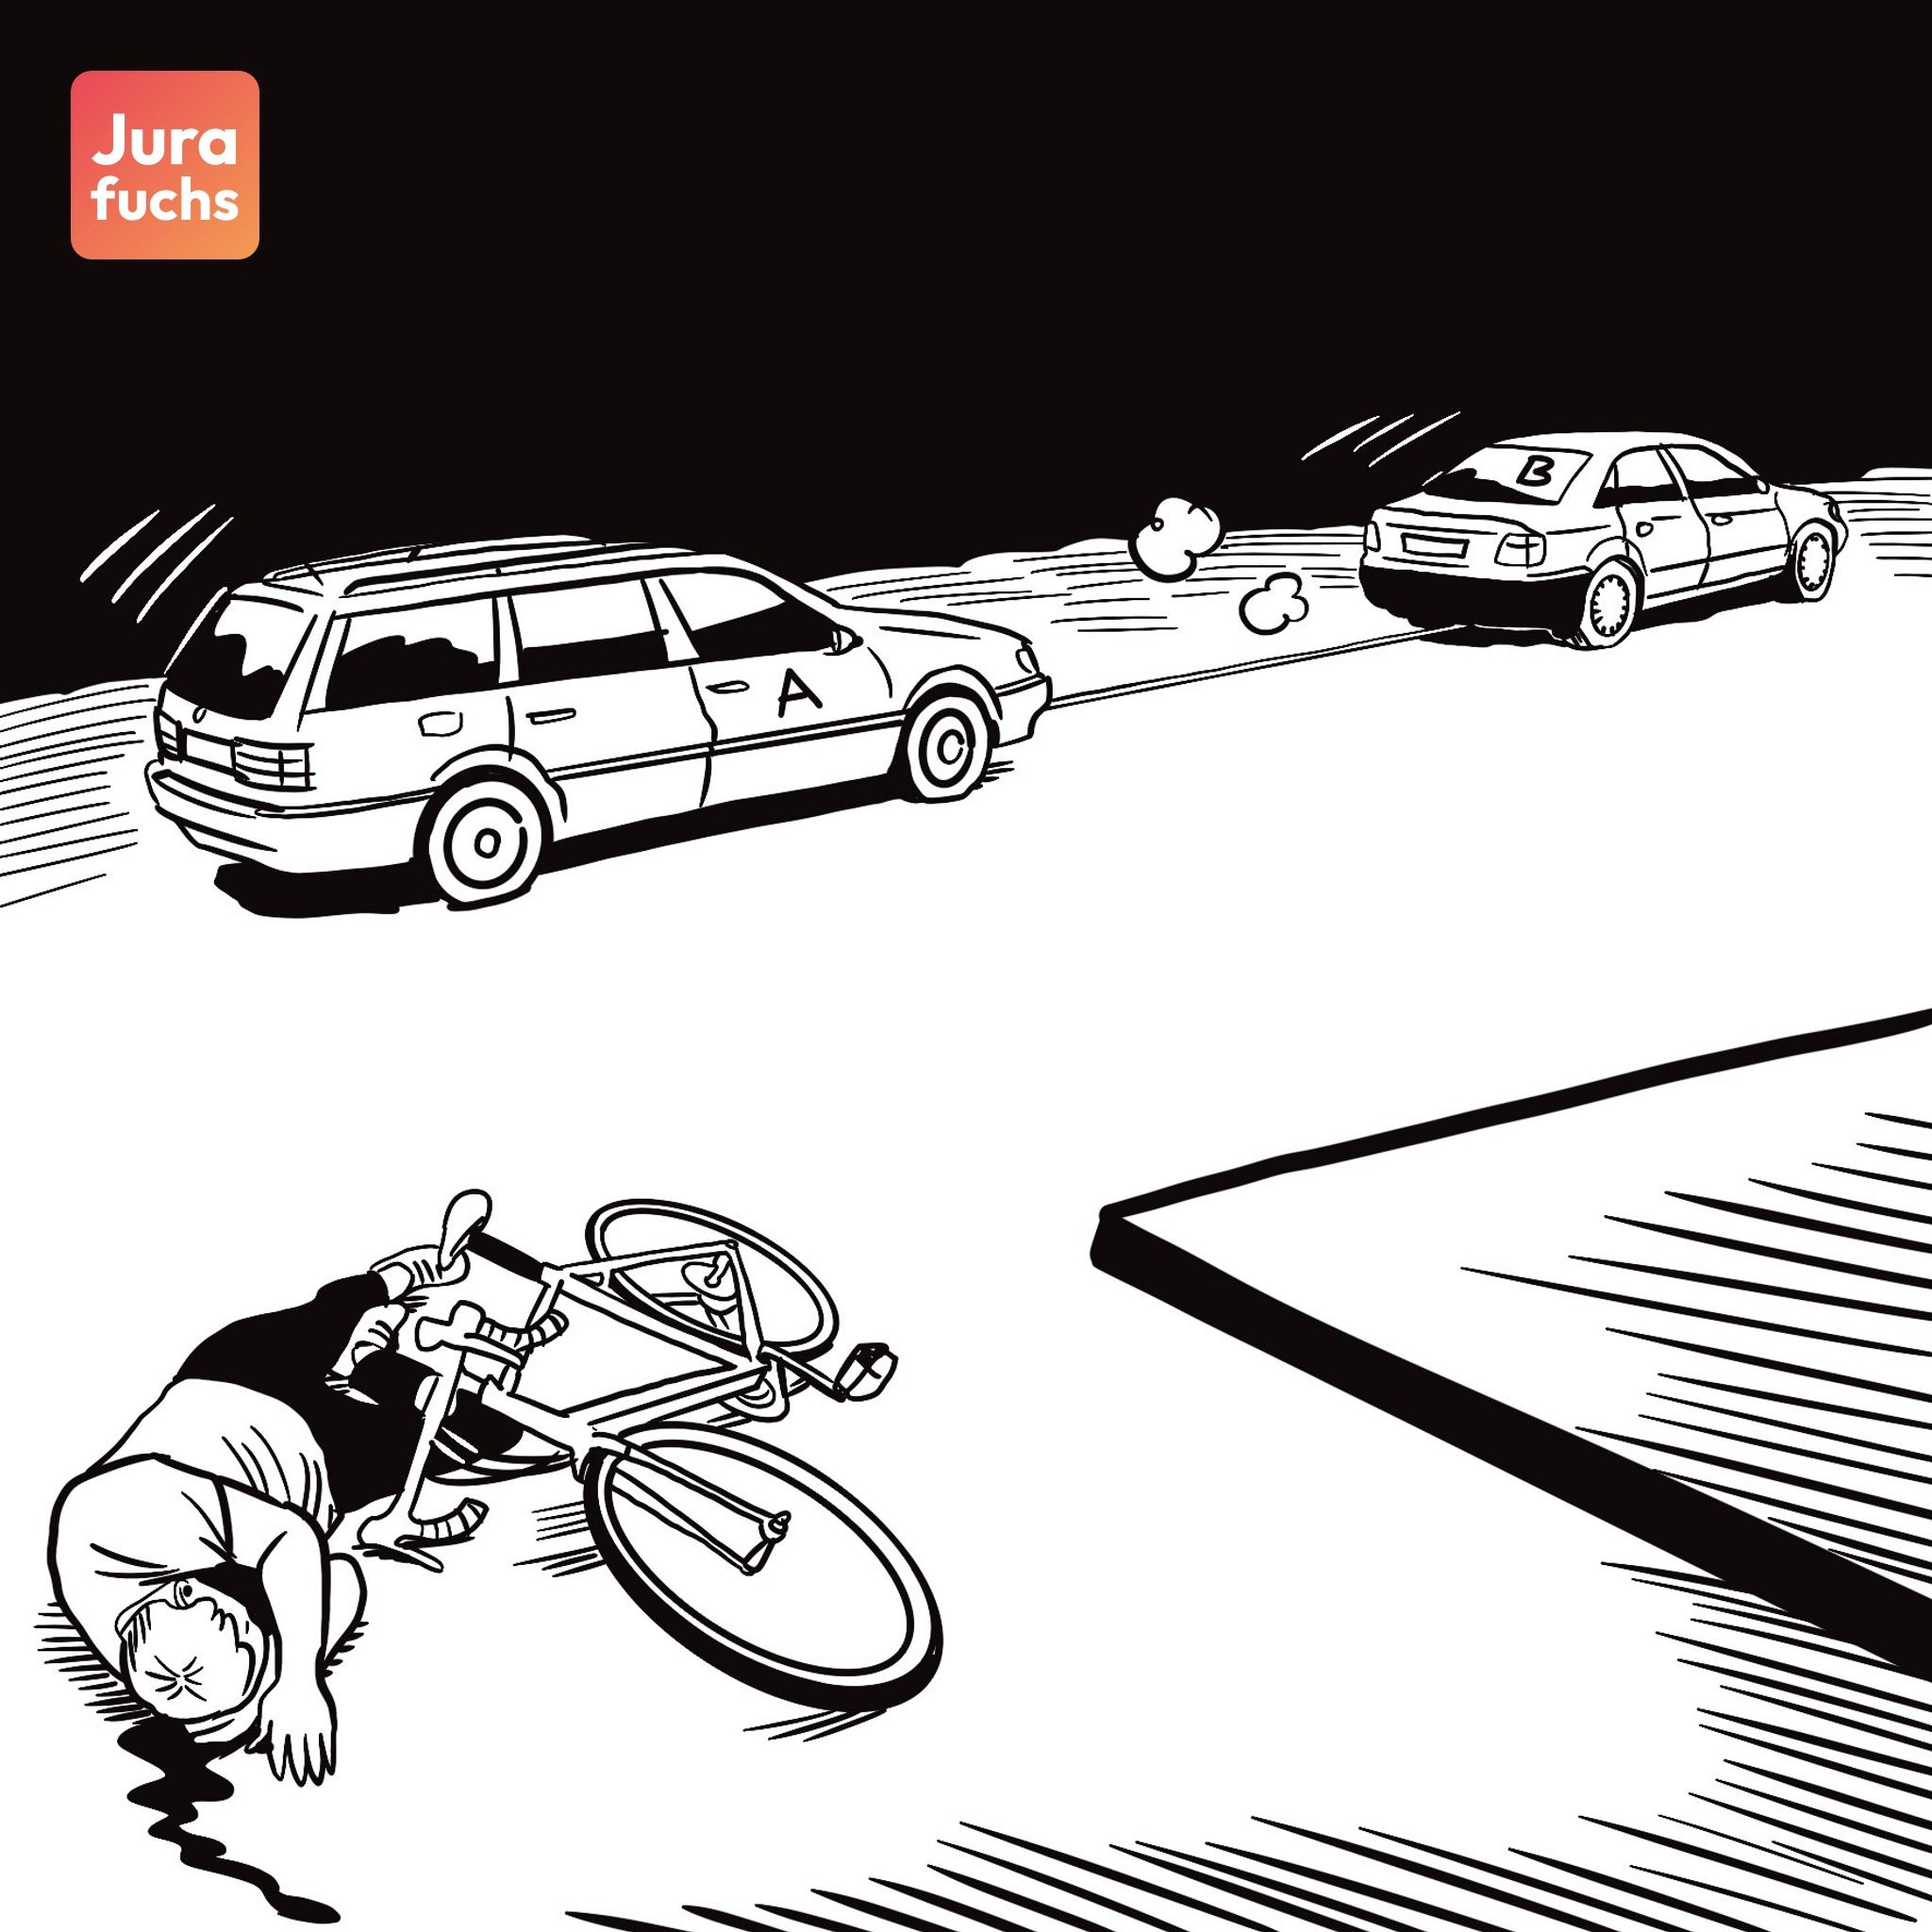 Jurafuchs Illustration: A und B fahren in Autos von dem schwerverletzten Radfahrer R weg, den A gerade überfahren hat. 